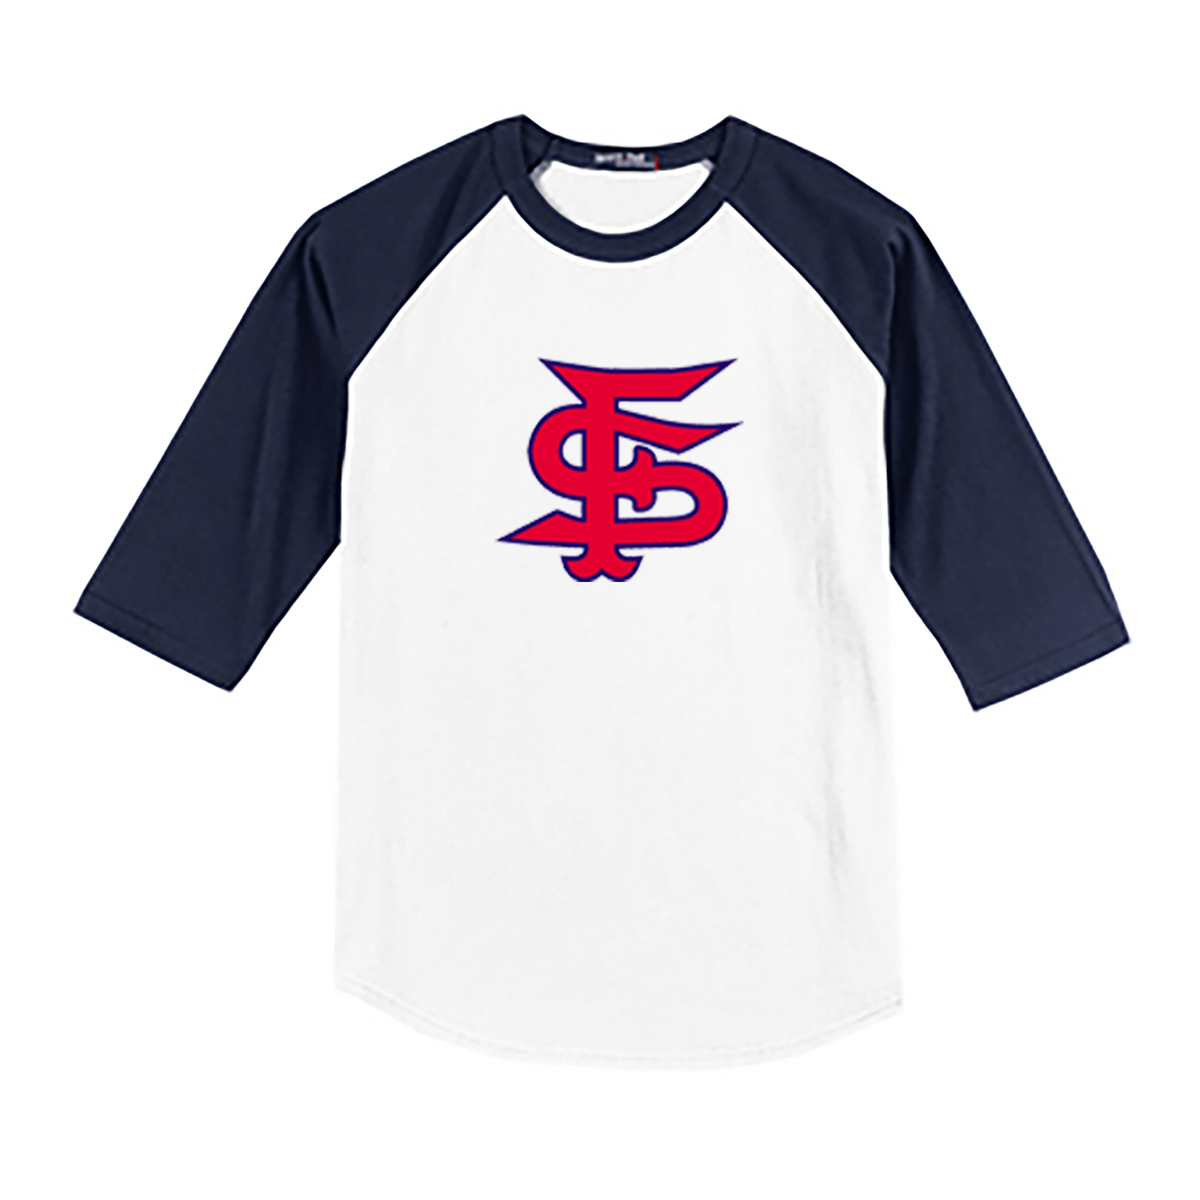 Fallon Sports 3/4 Sleeve Baseball Shirt